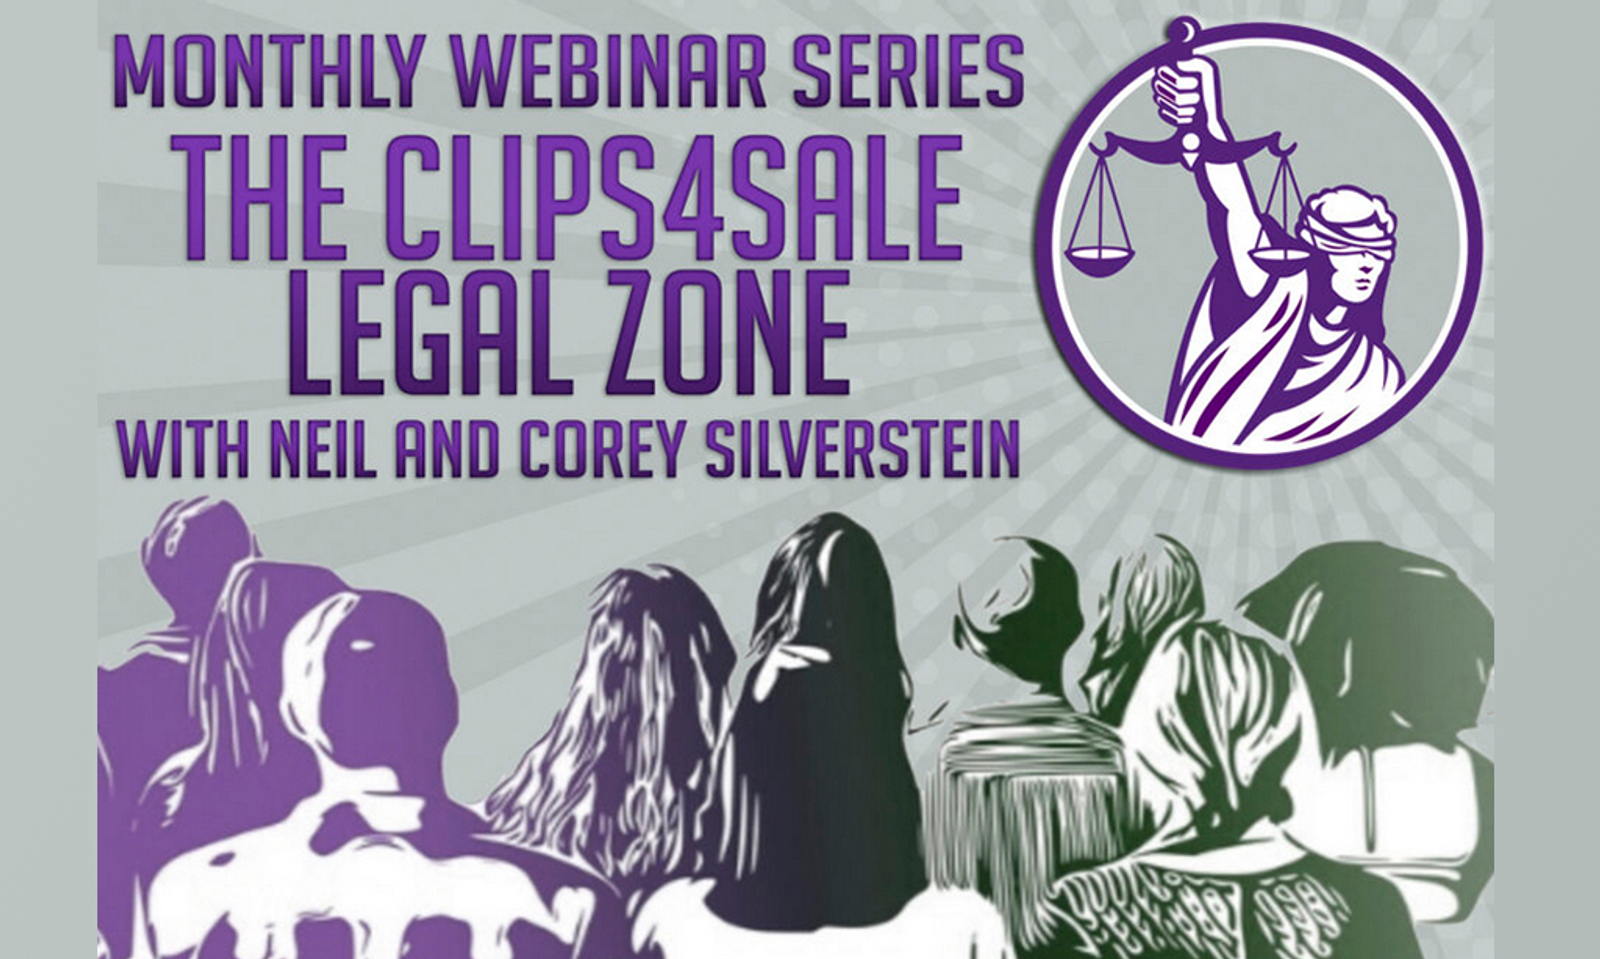 Clips4Sale, Corey Silverstein Launch New Legal Webinar Series